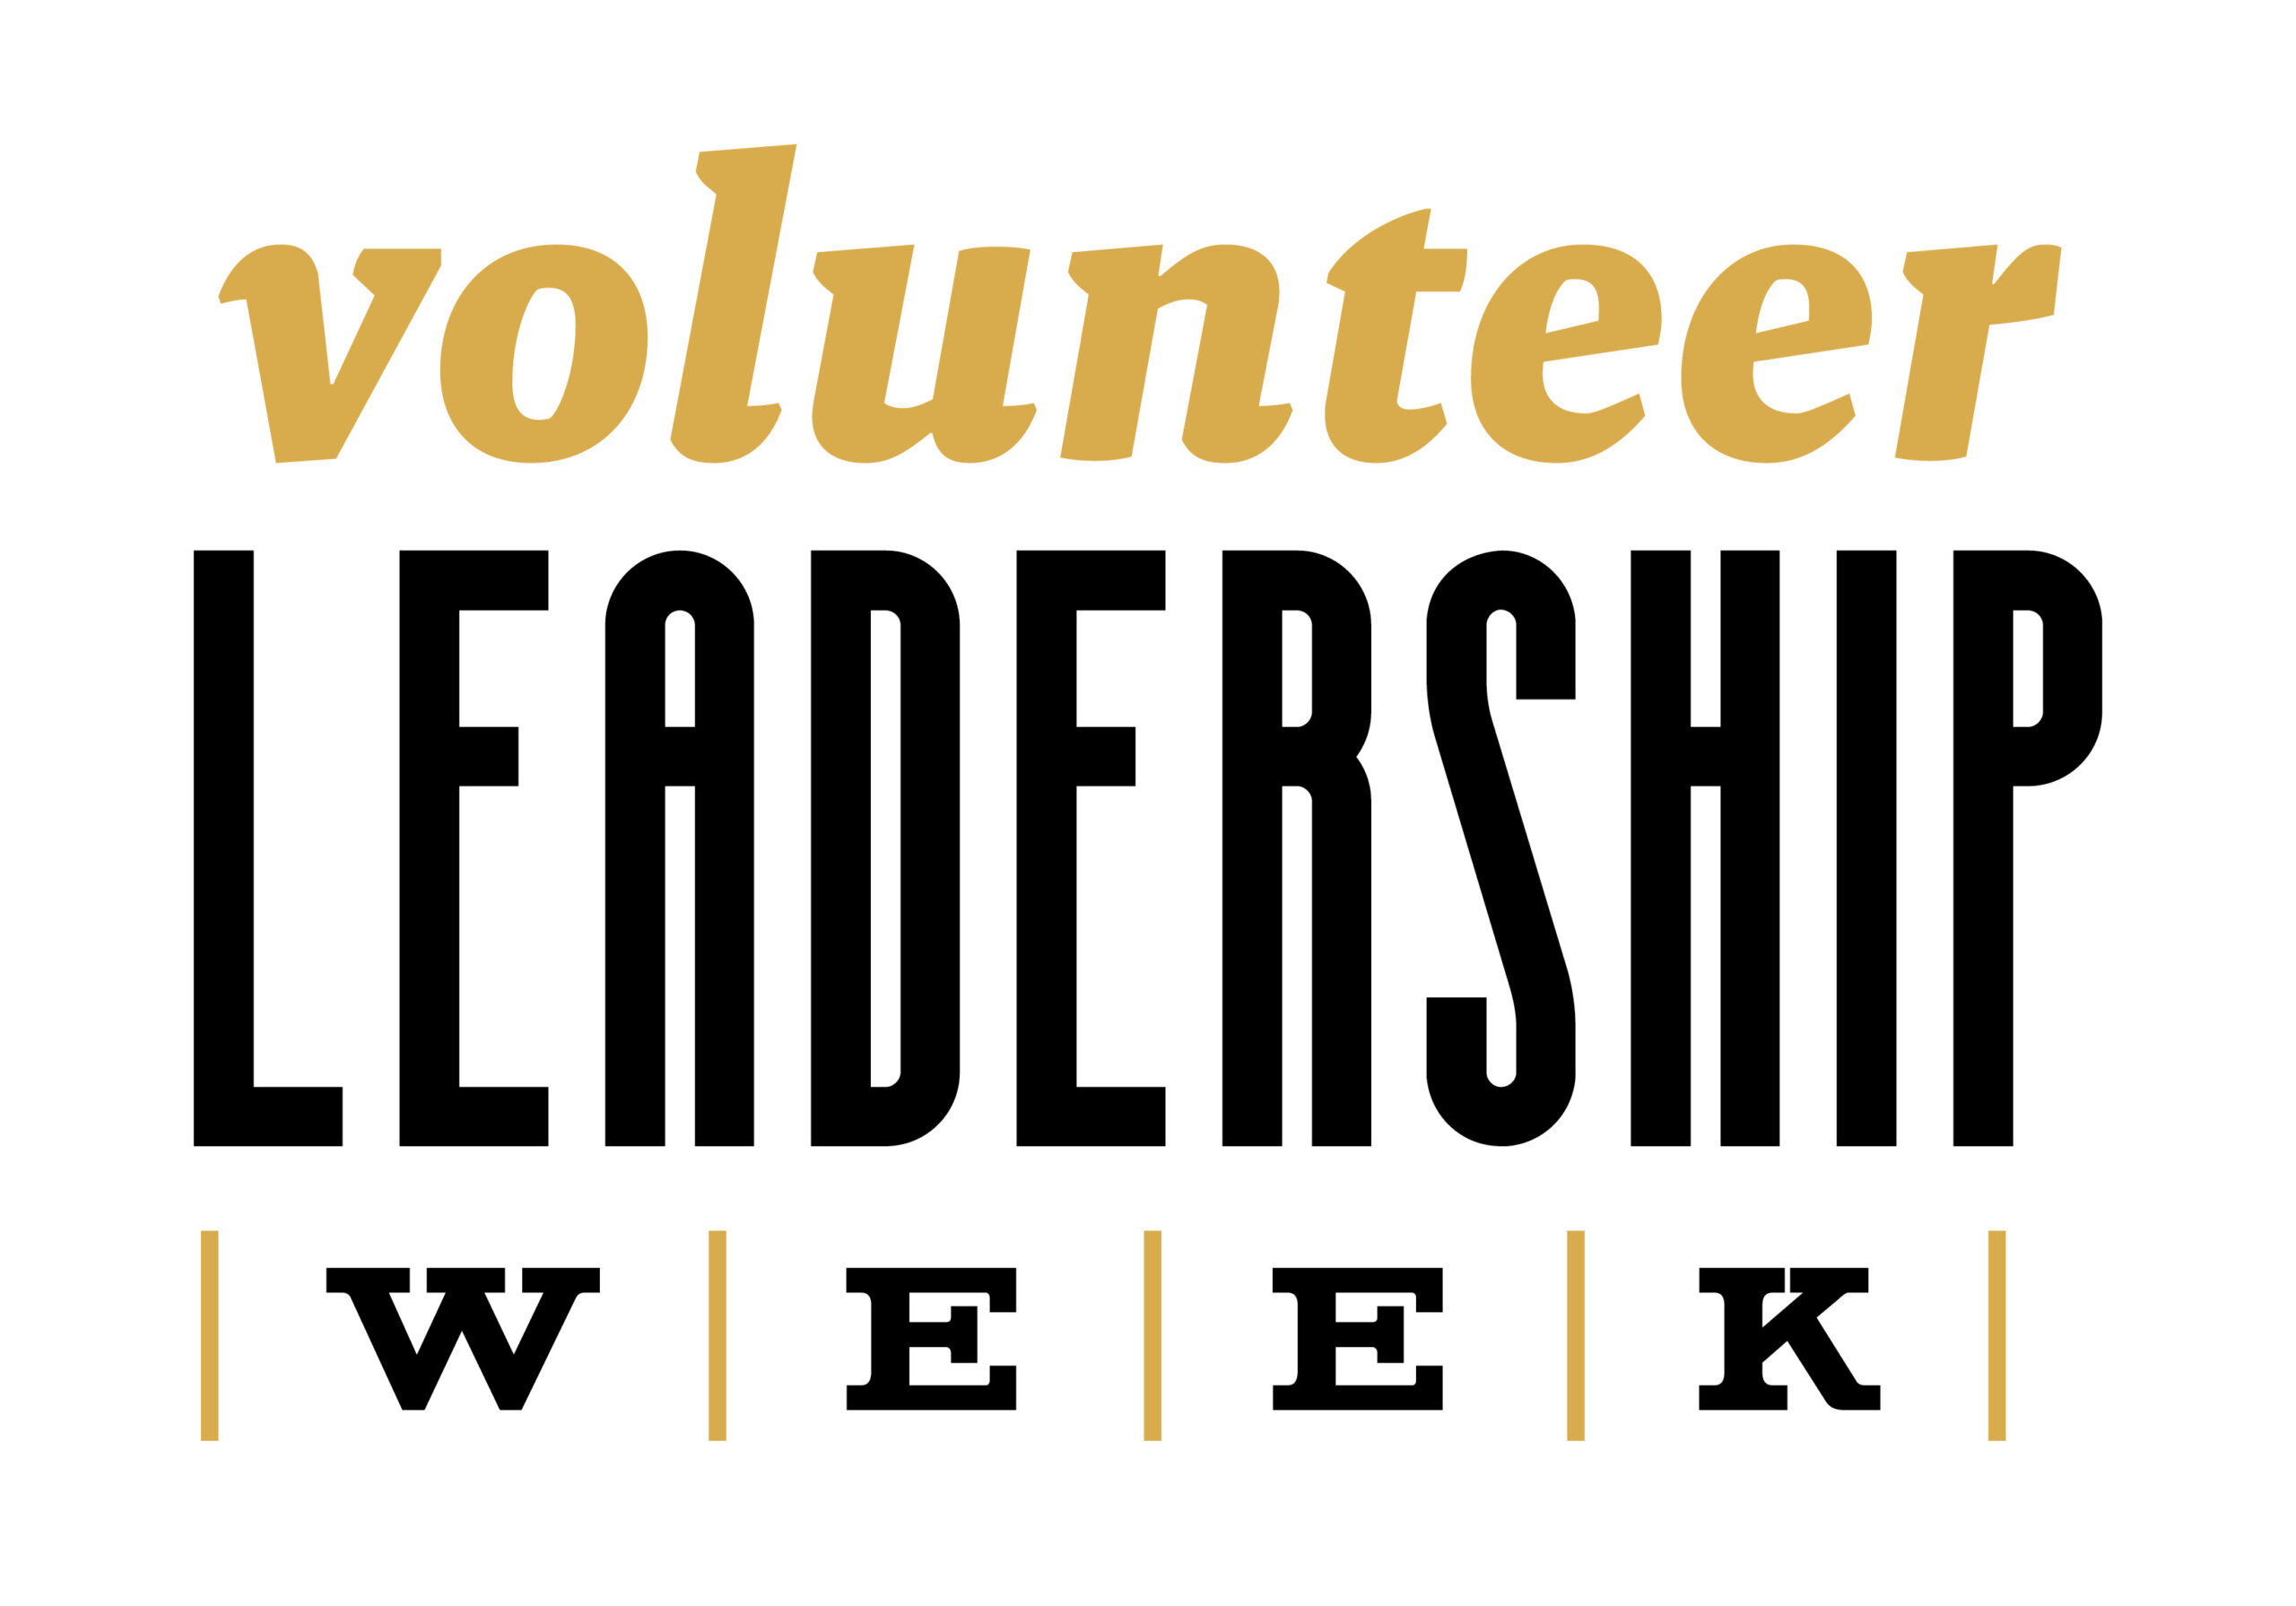 Volunteer Leadership Week 2021